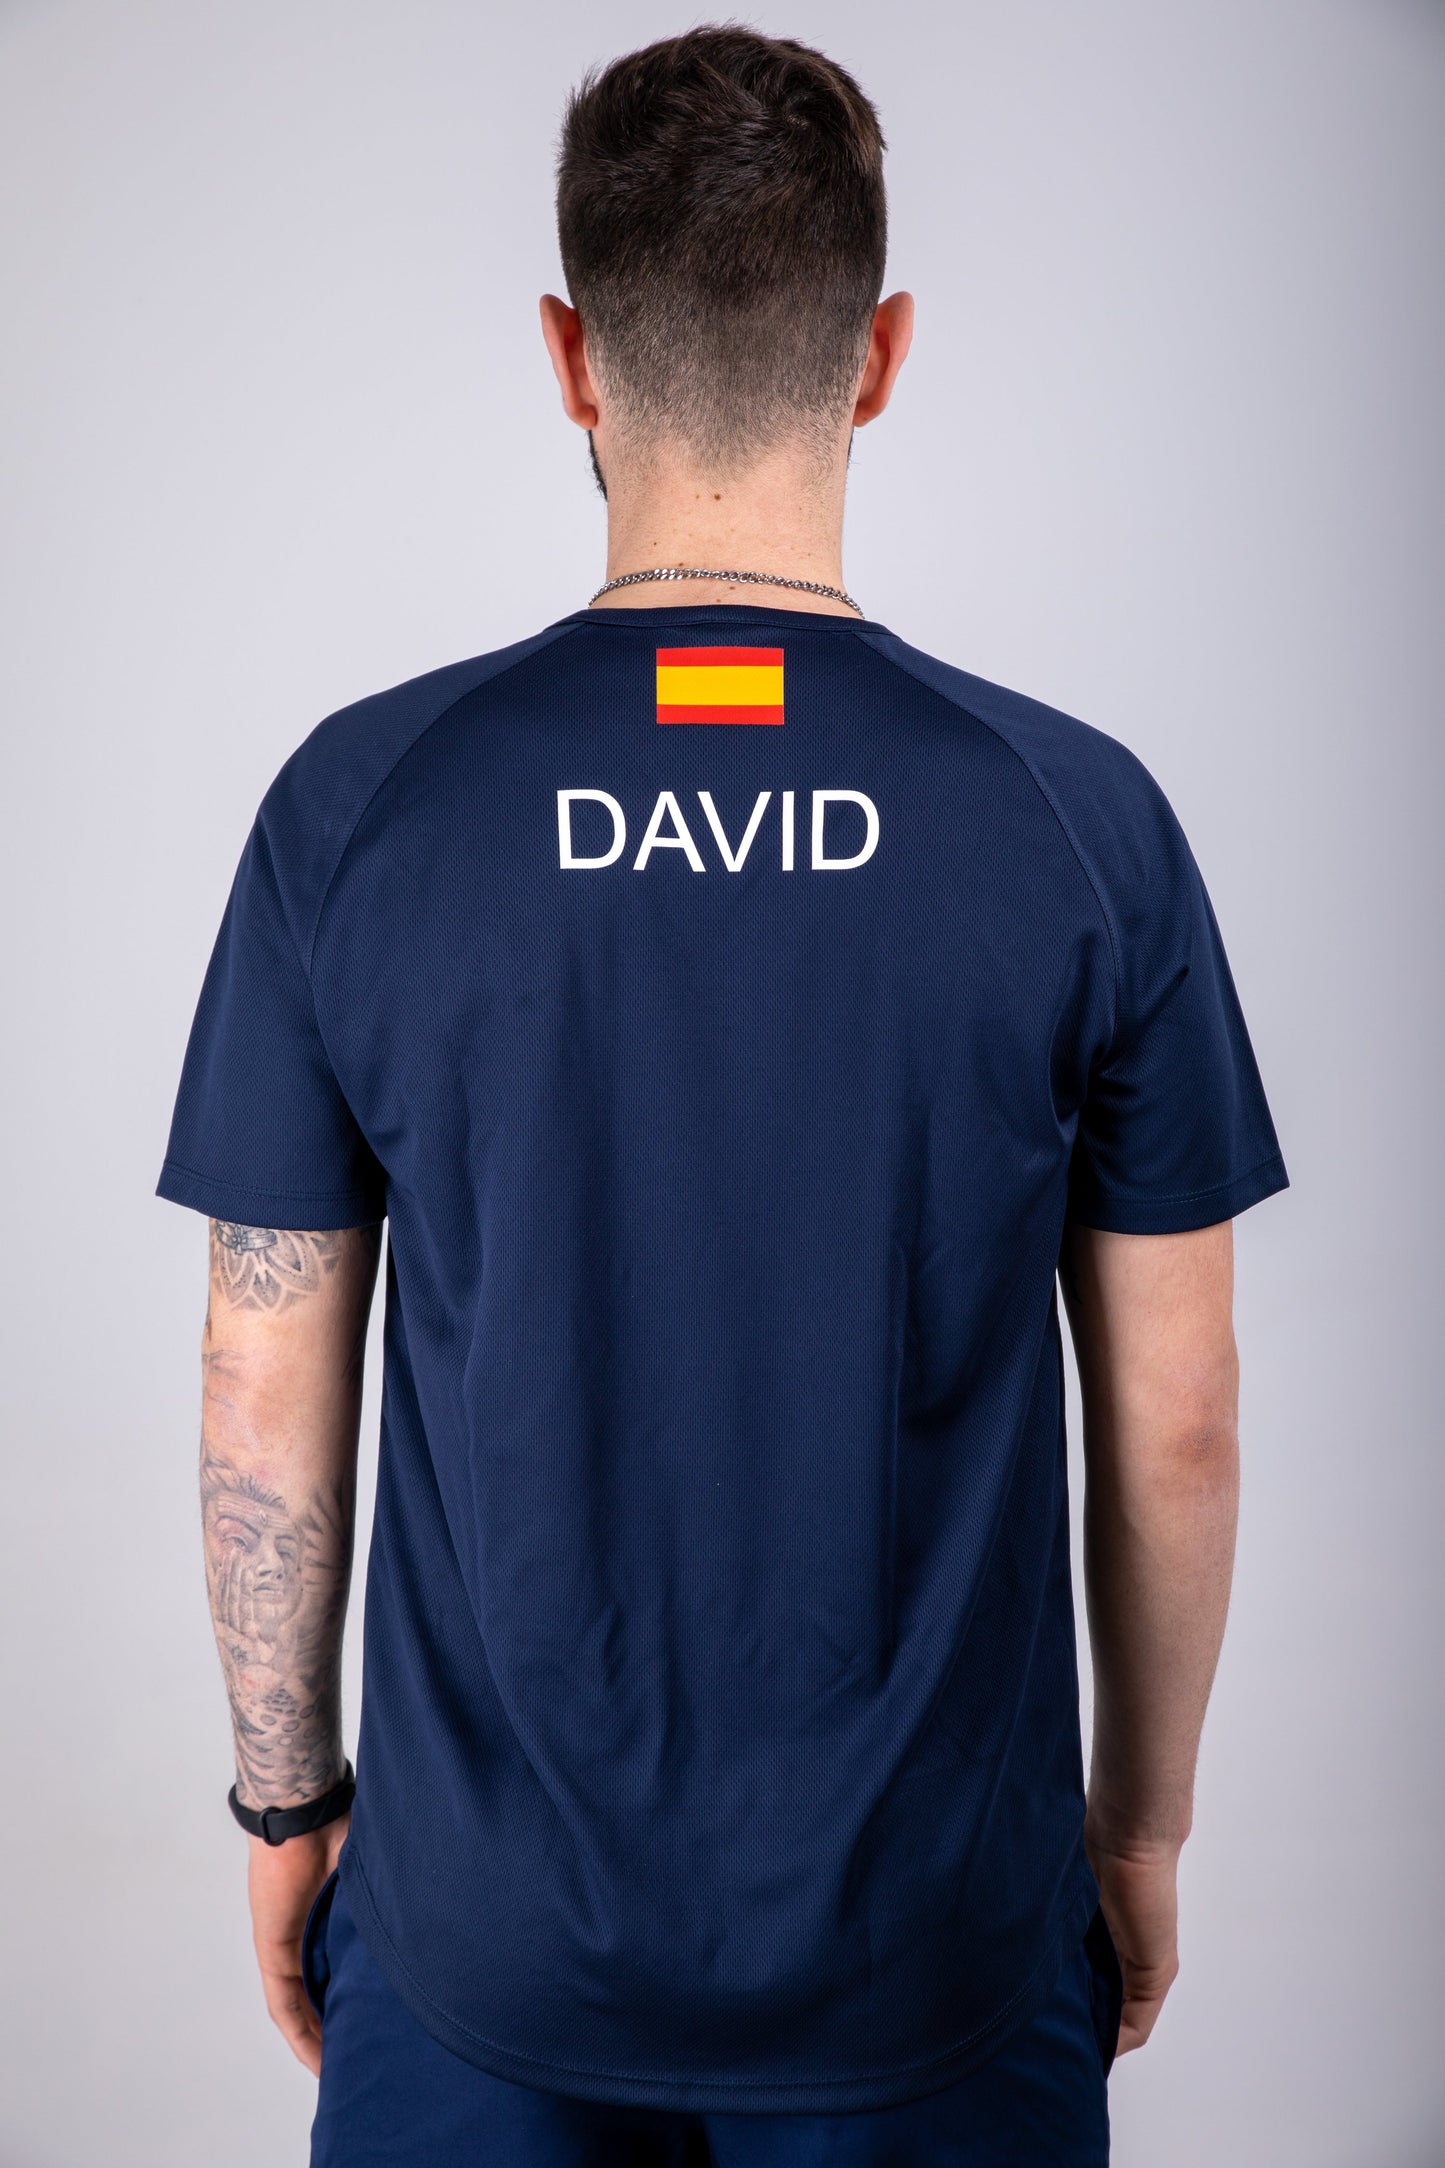 Camiseta Personalizada DAVID ¡ENVÍO 1€!